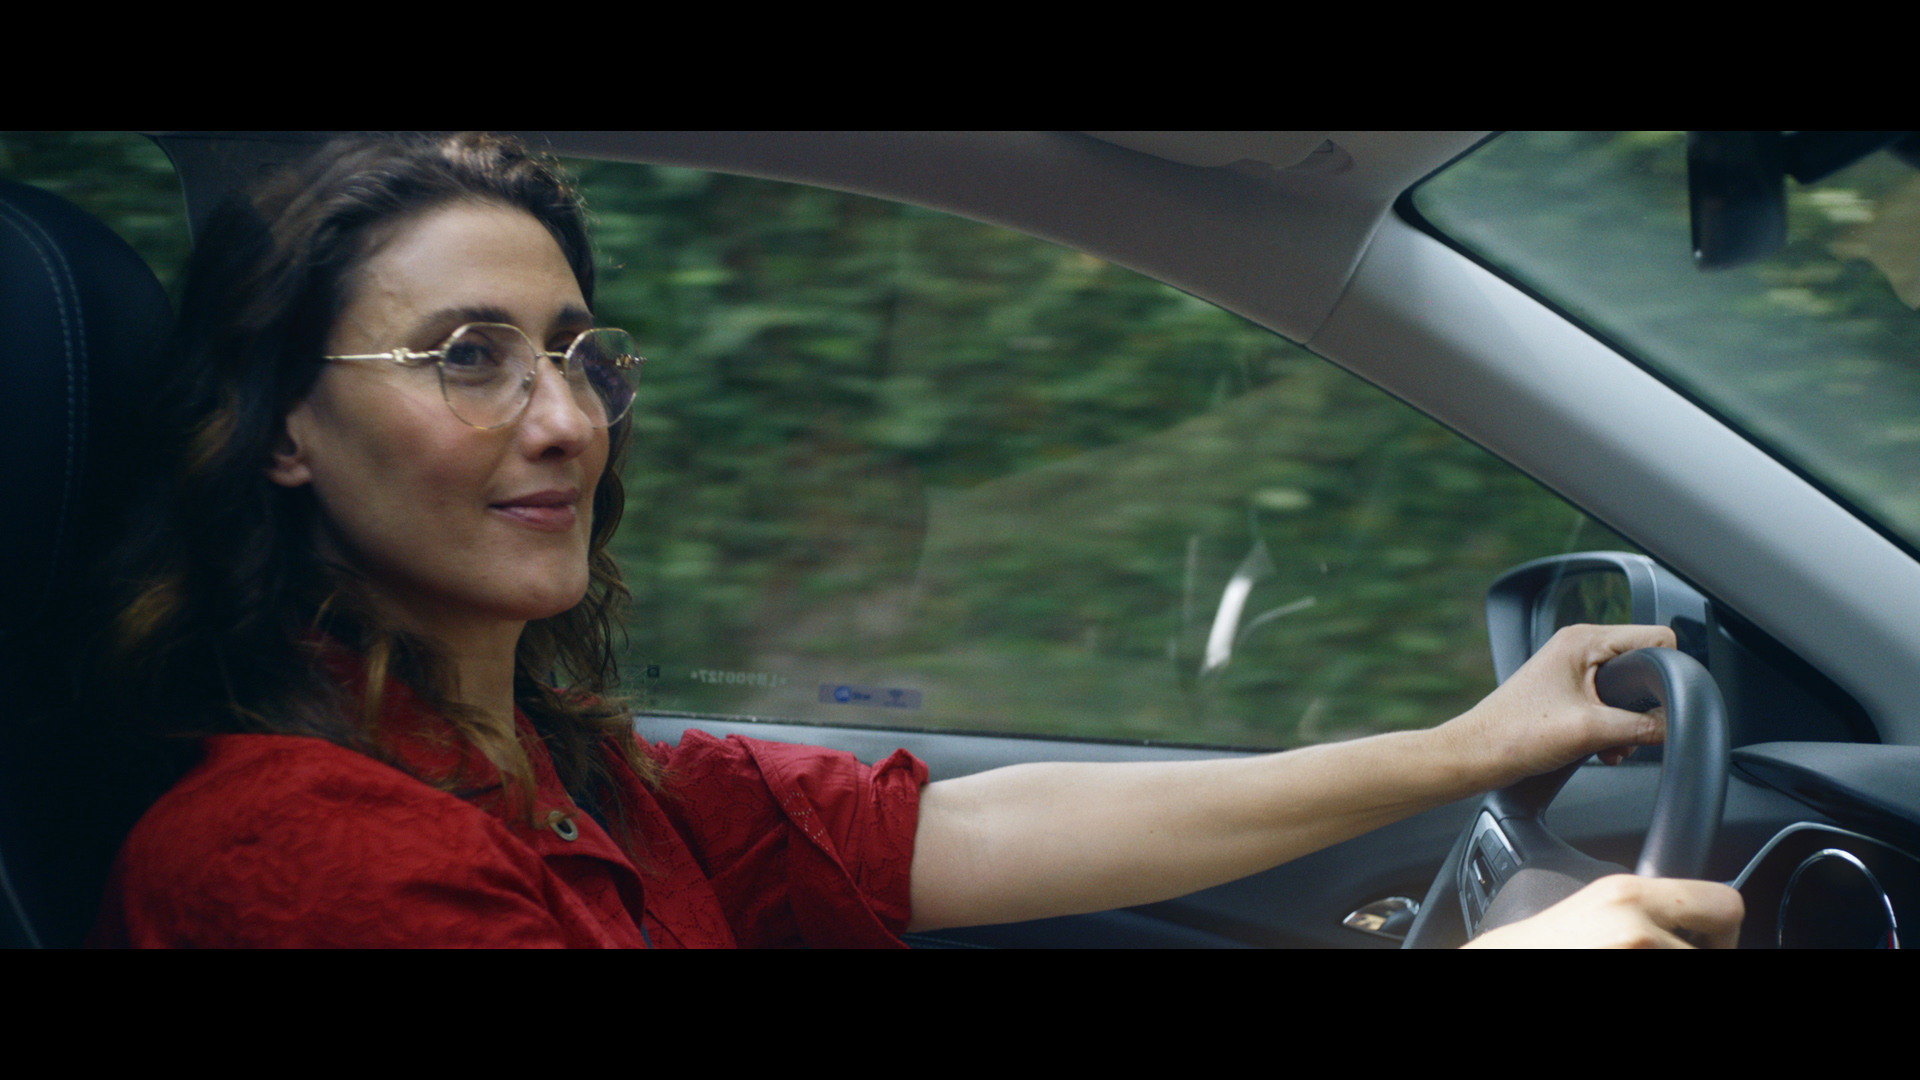 Chevrolet Tracker incentiva o empoderamento feminino em “Restart”